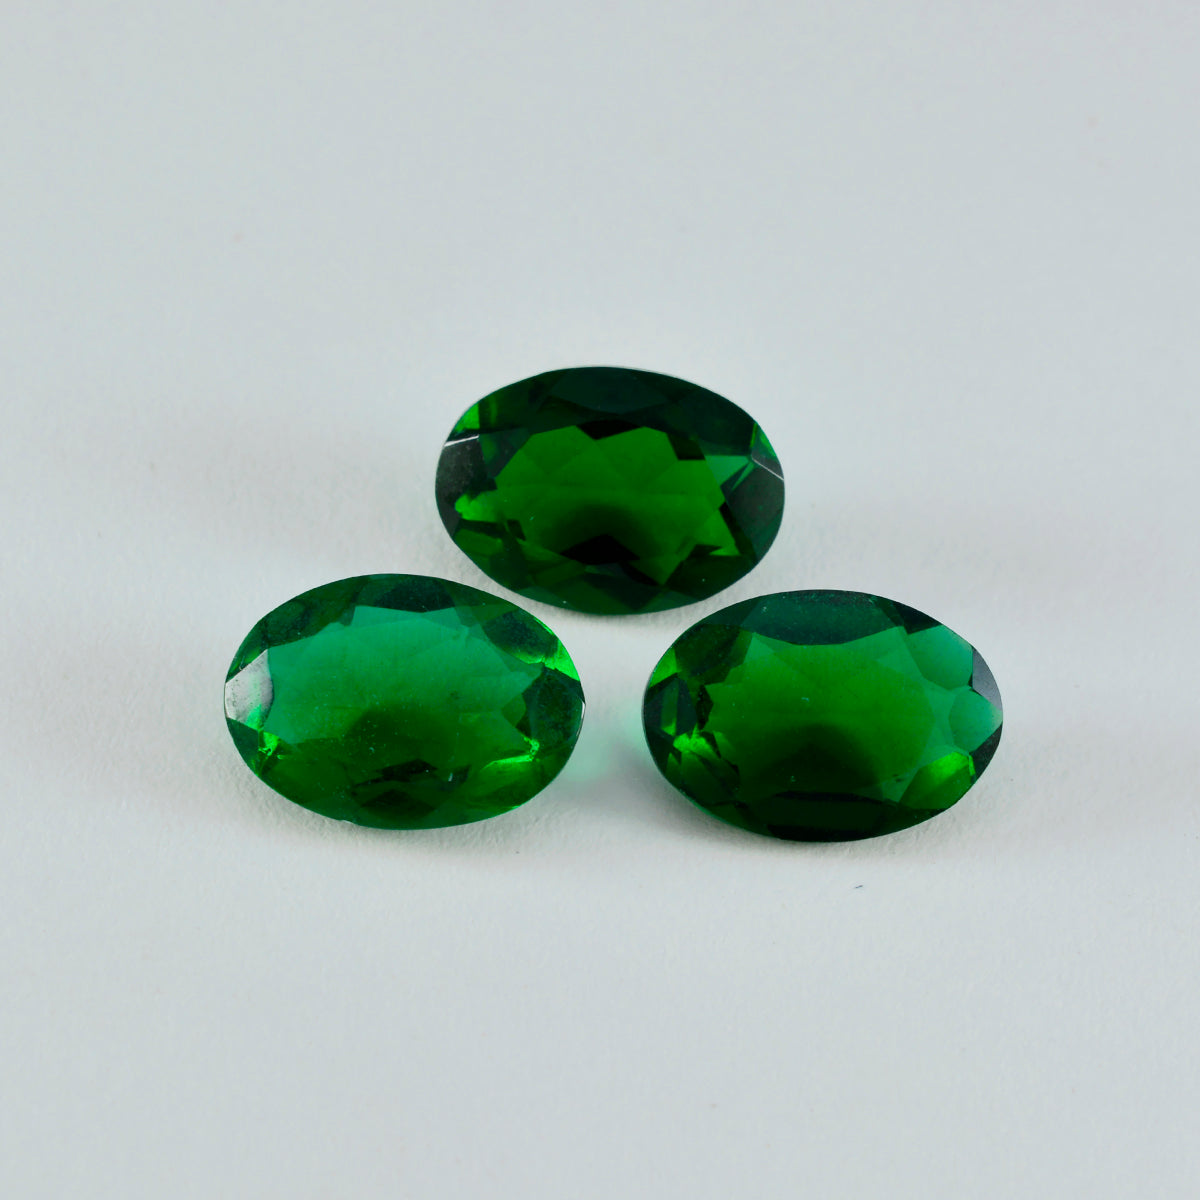 Riyogems 1 pièce émeraude verte cz à facettes 10x14mm forme ovale jolie pierre précieuse en vrac de qualité